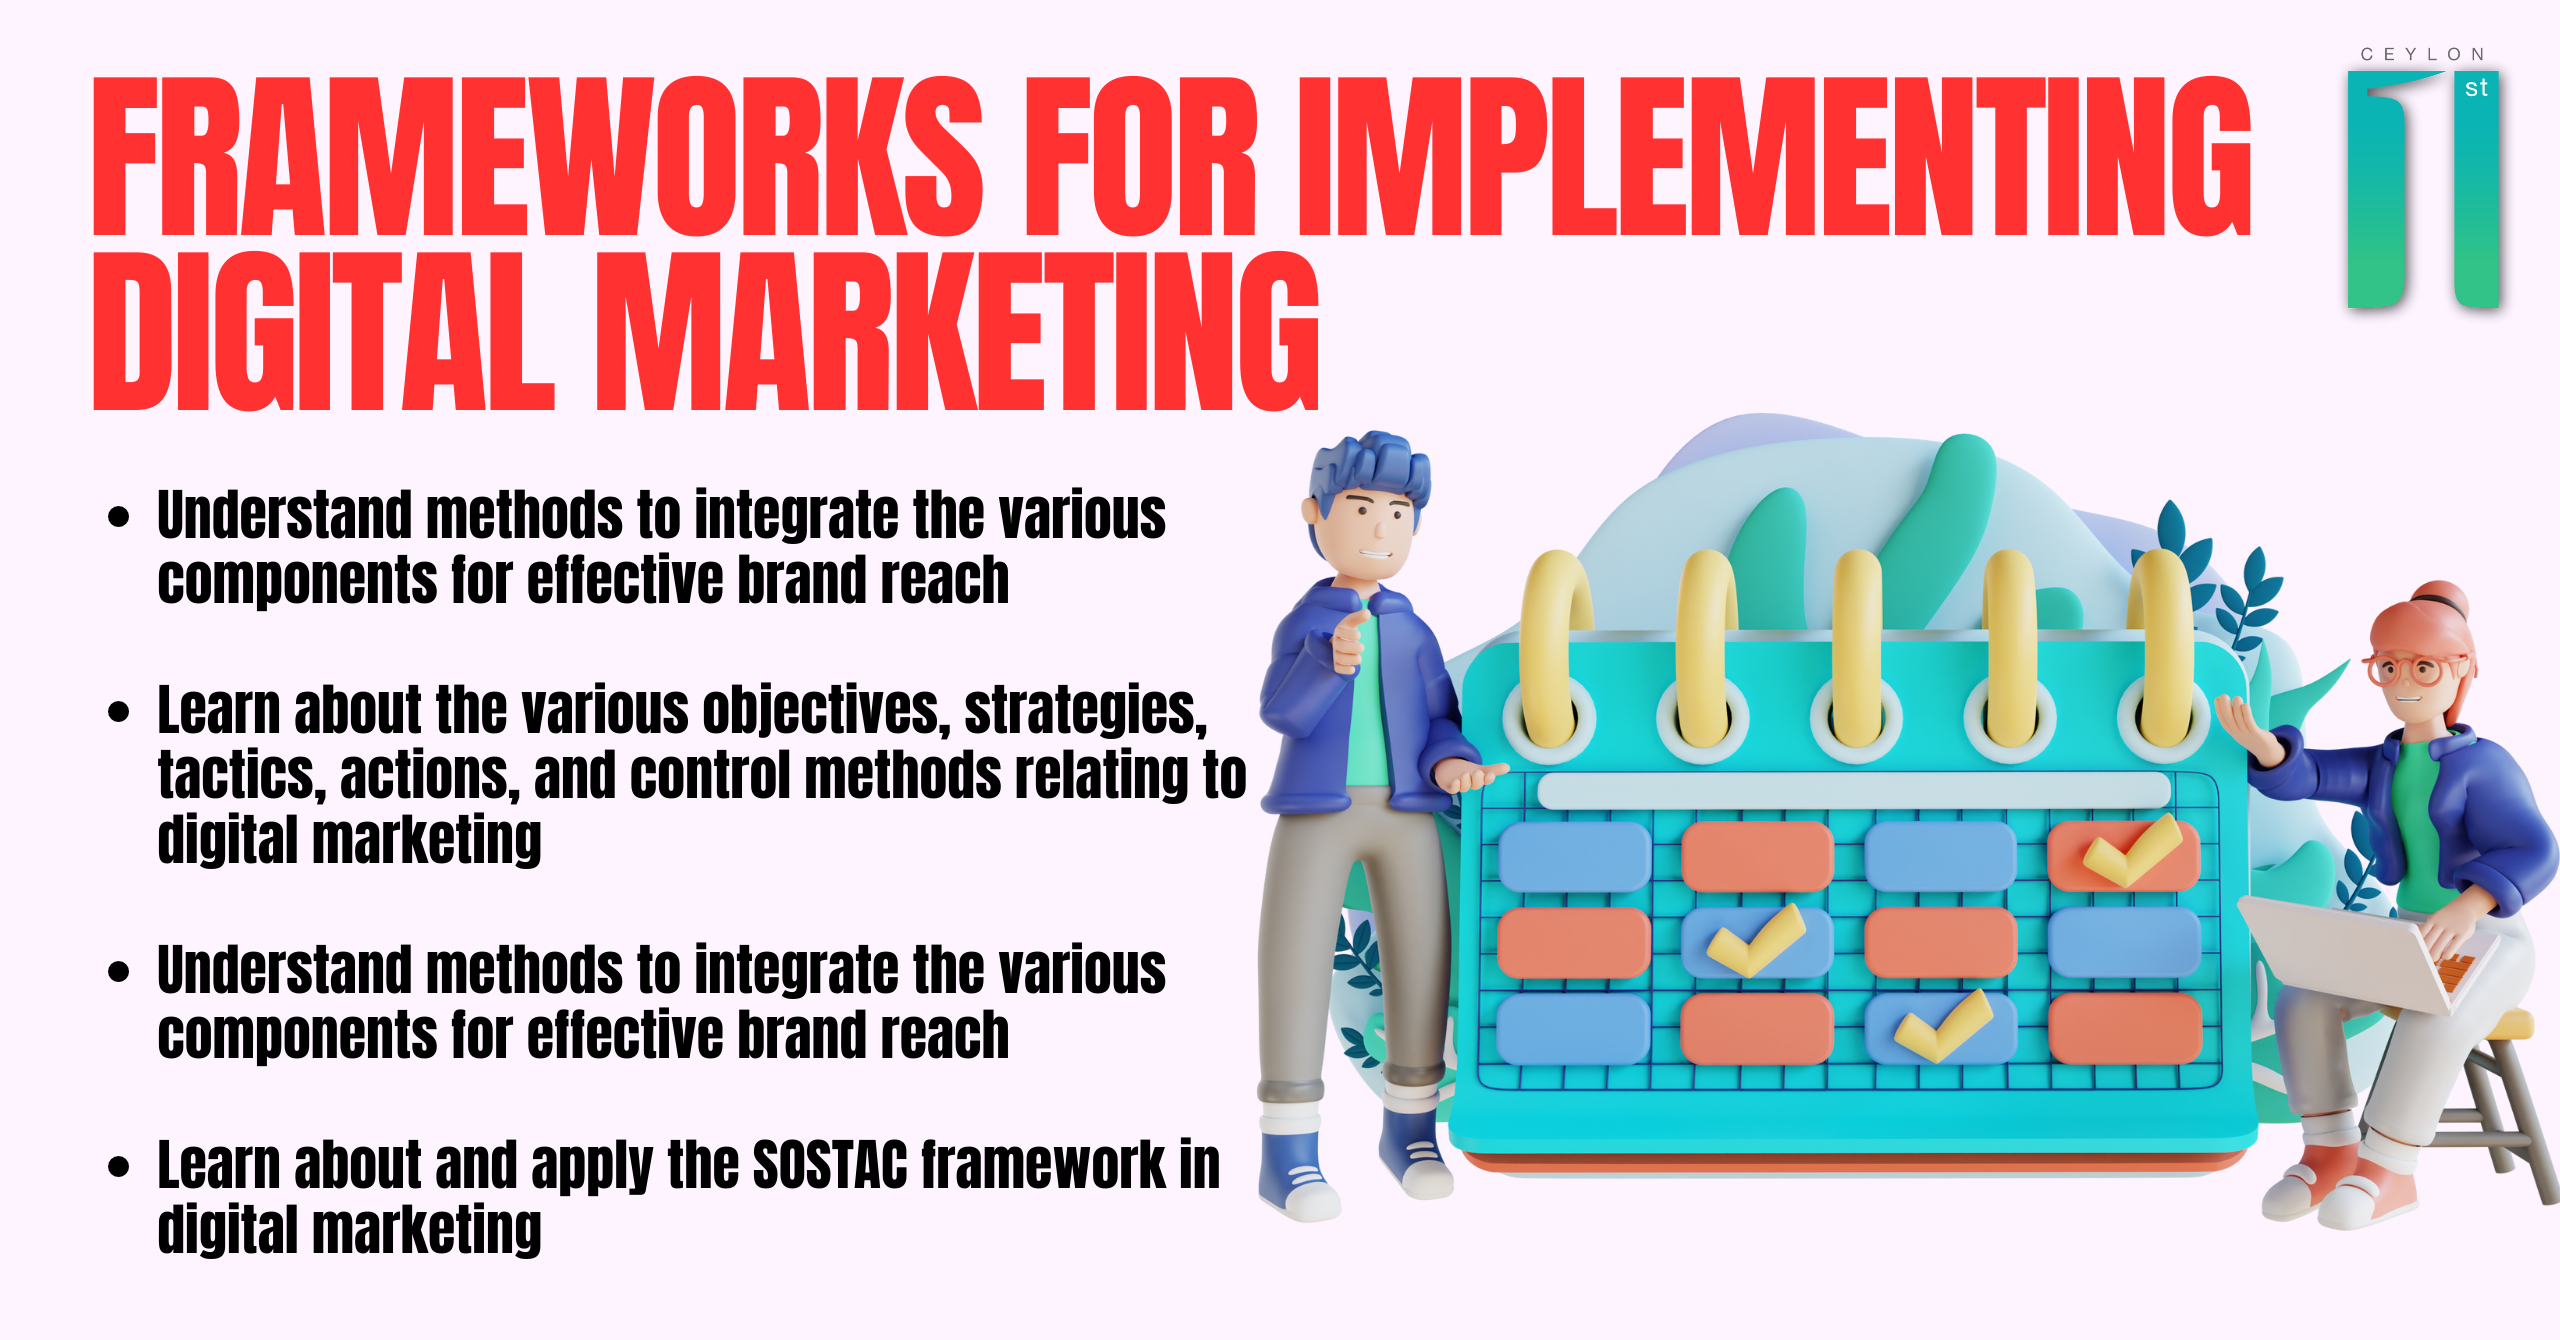 Frameworks for Implementing Digital Marketing